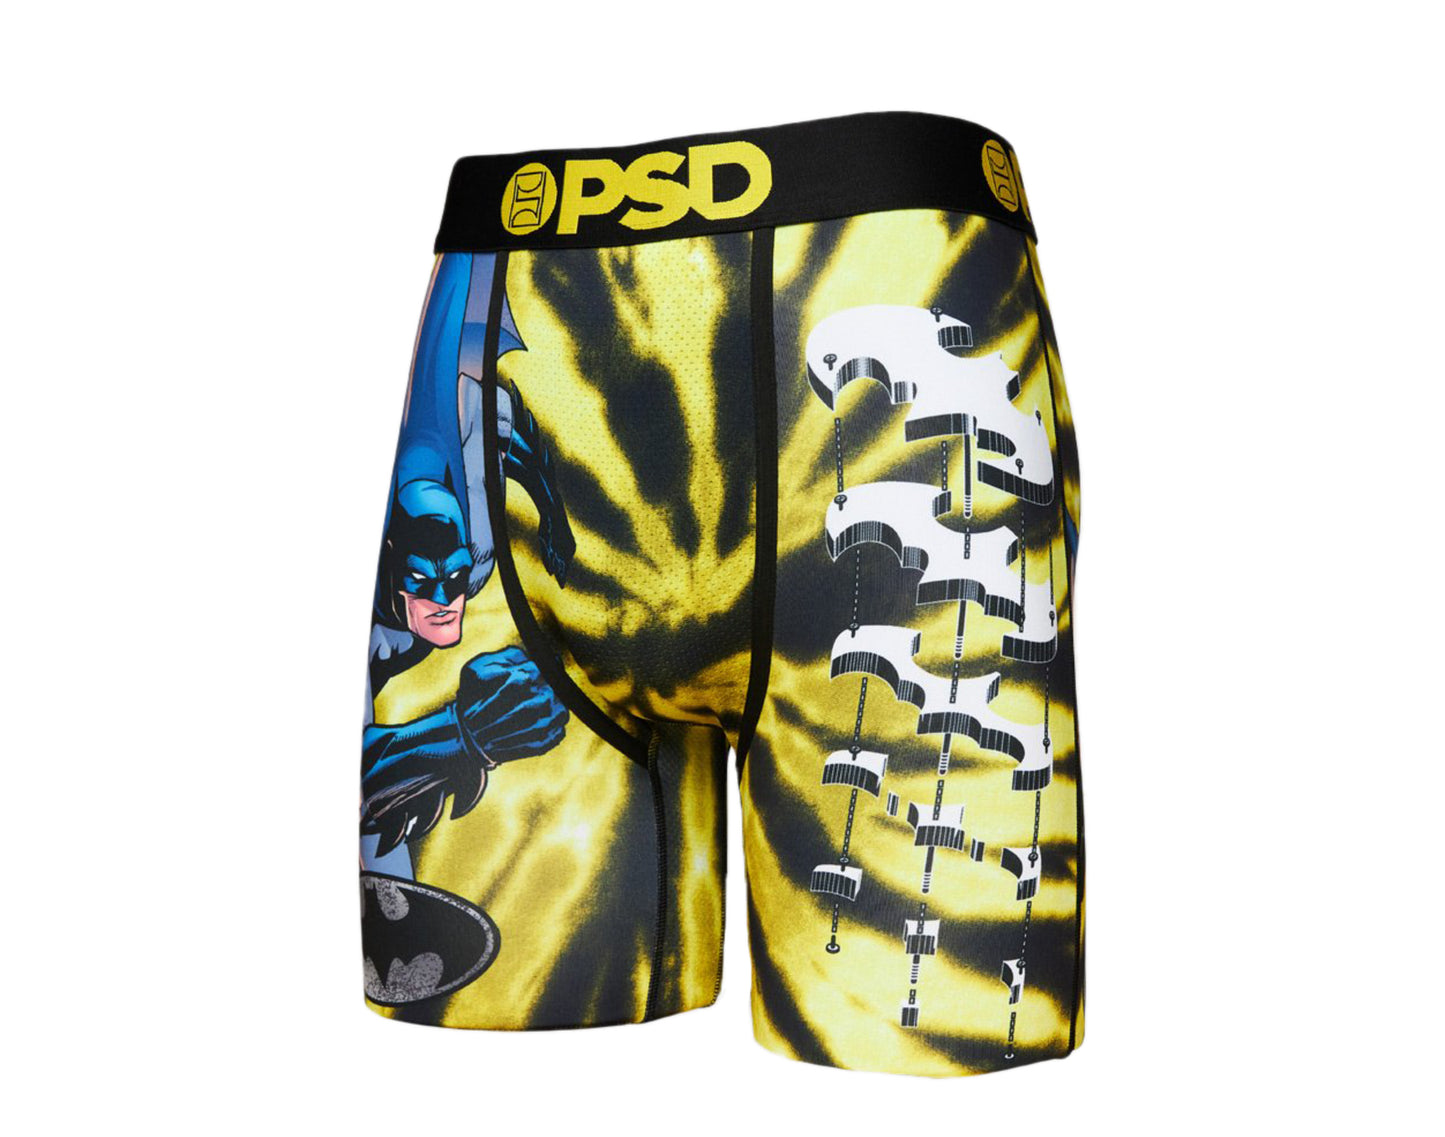 PSD DC - Part Out Boxer Briefs Men's Underwear